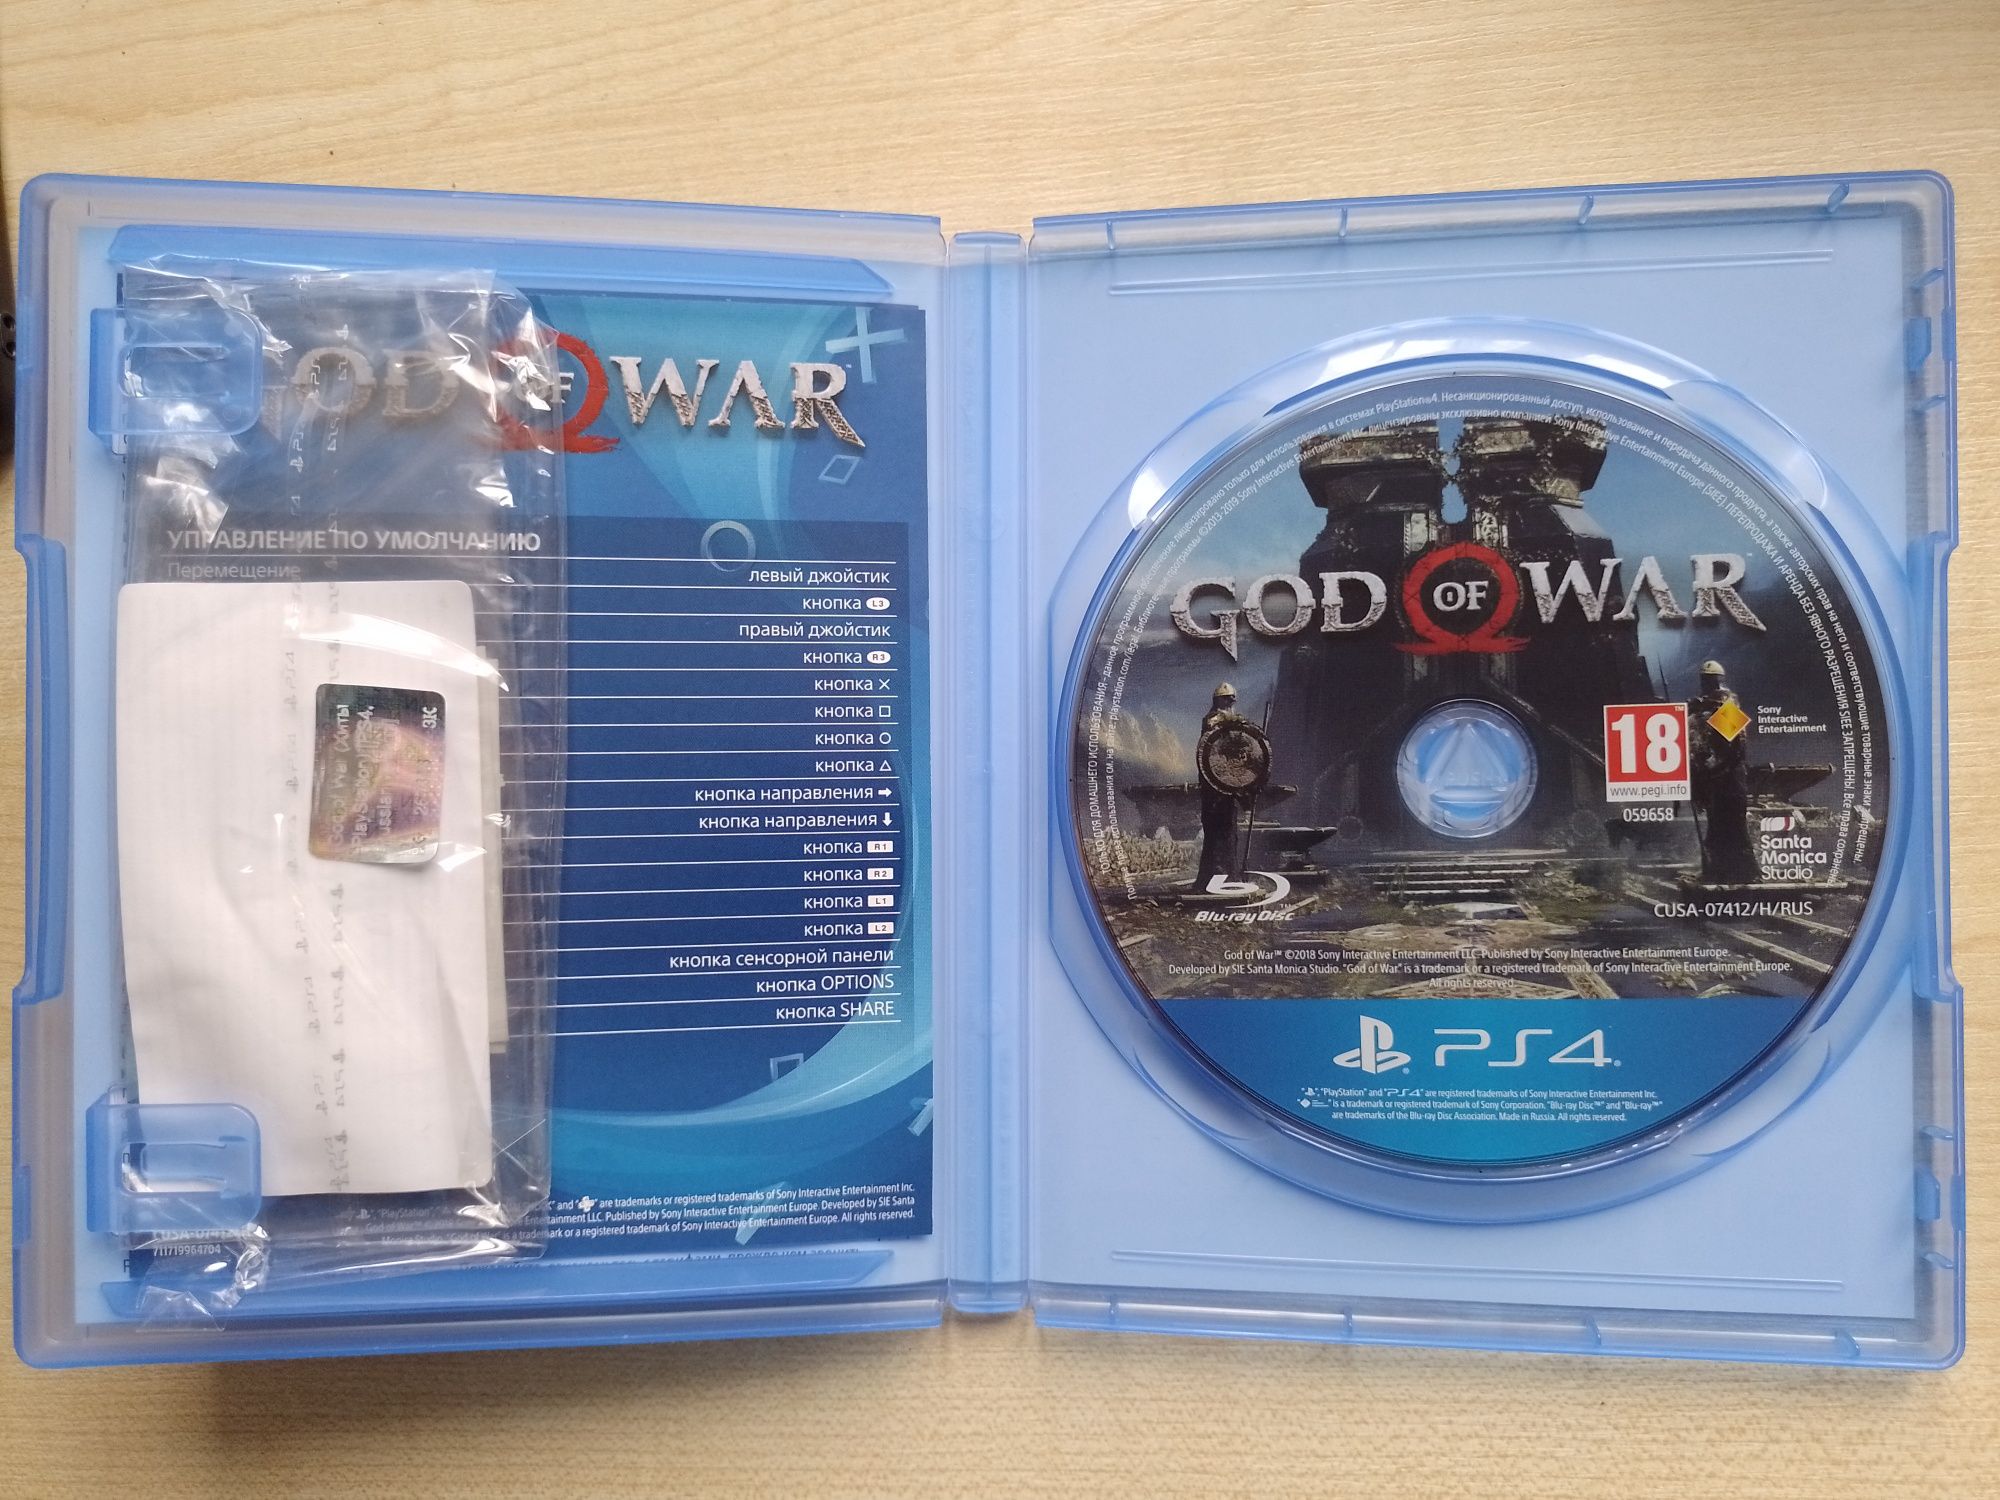 Продам диск God of War Ps4